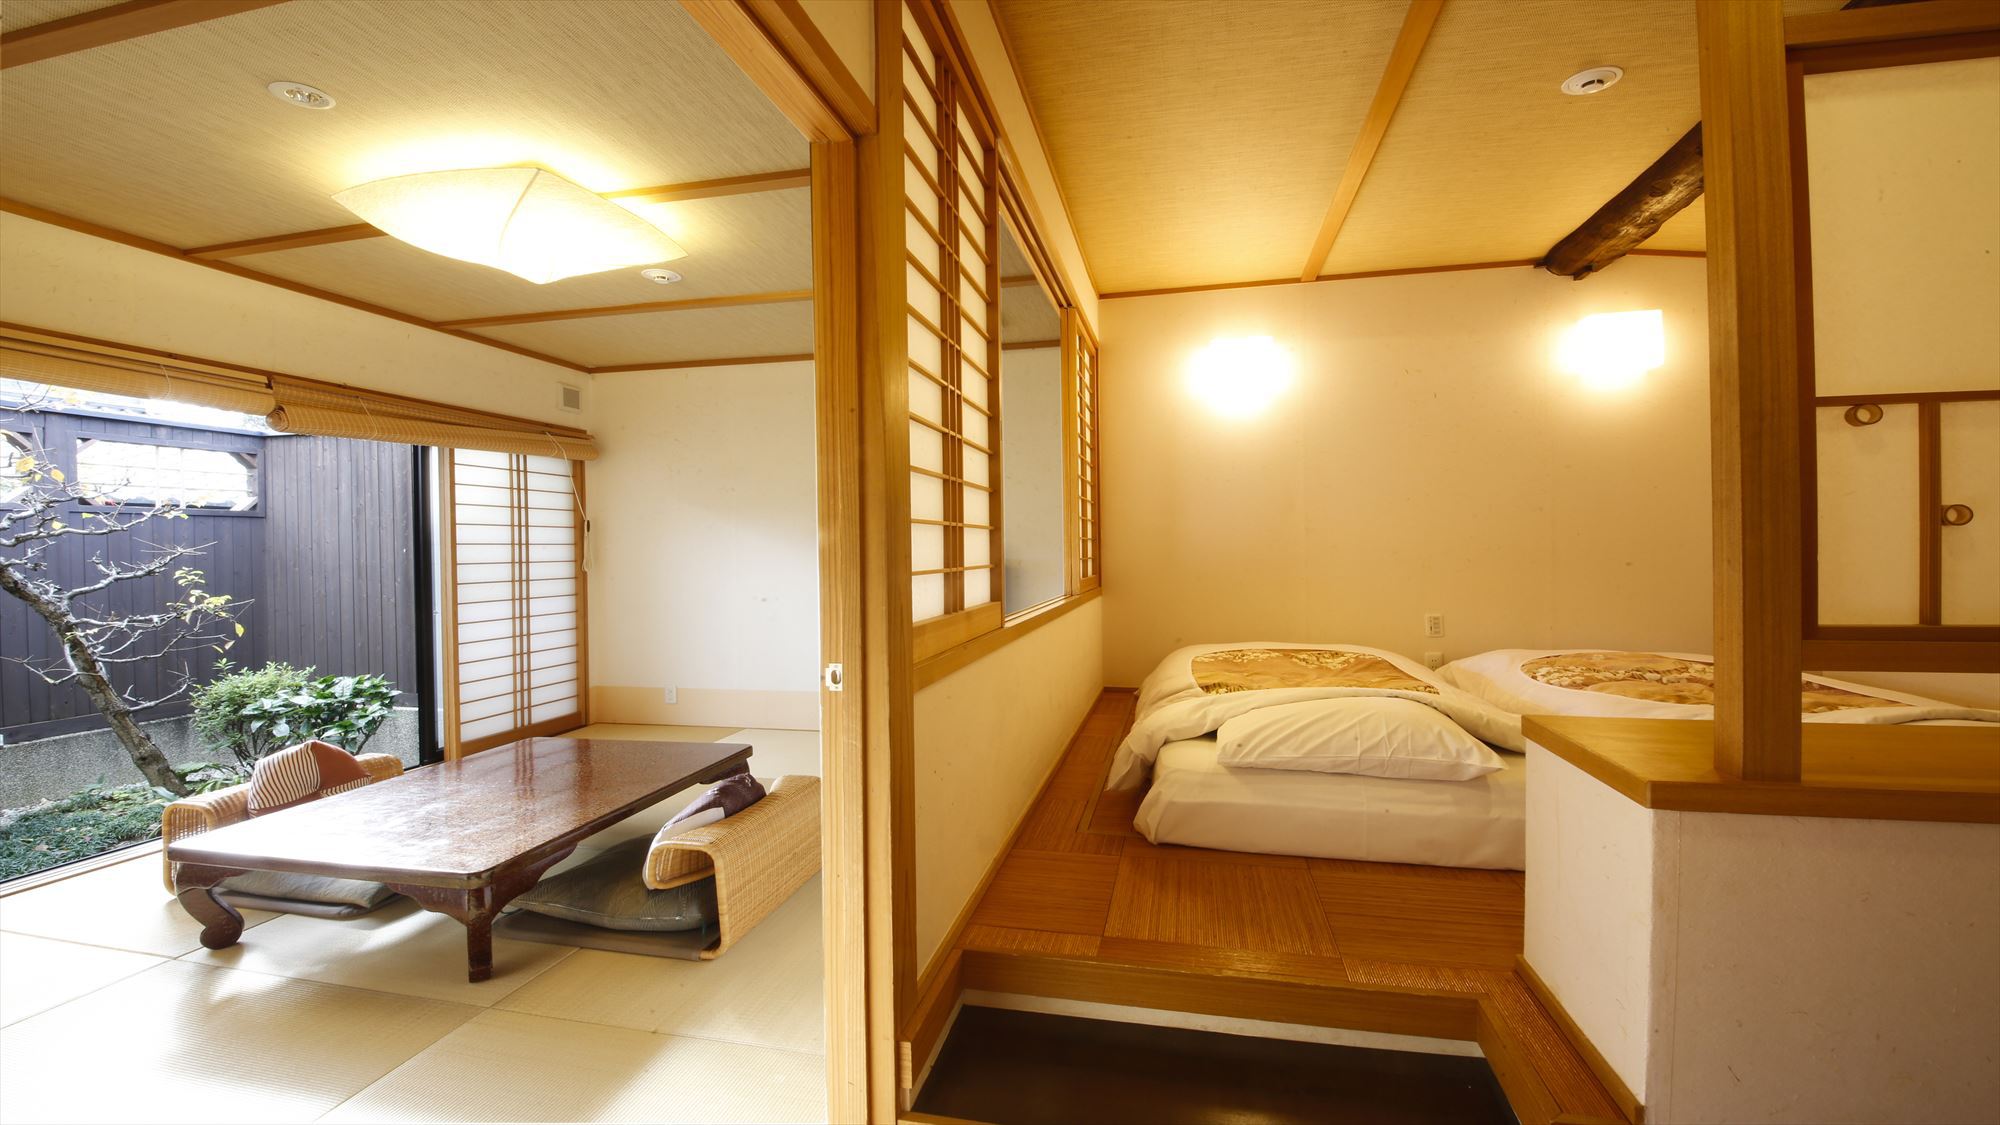 鹿鳴山荘梅 露天風呂付きのお部屋です。二間に分かれた12畳のお部屋です